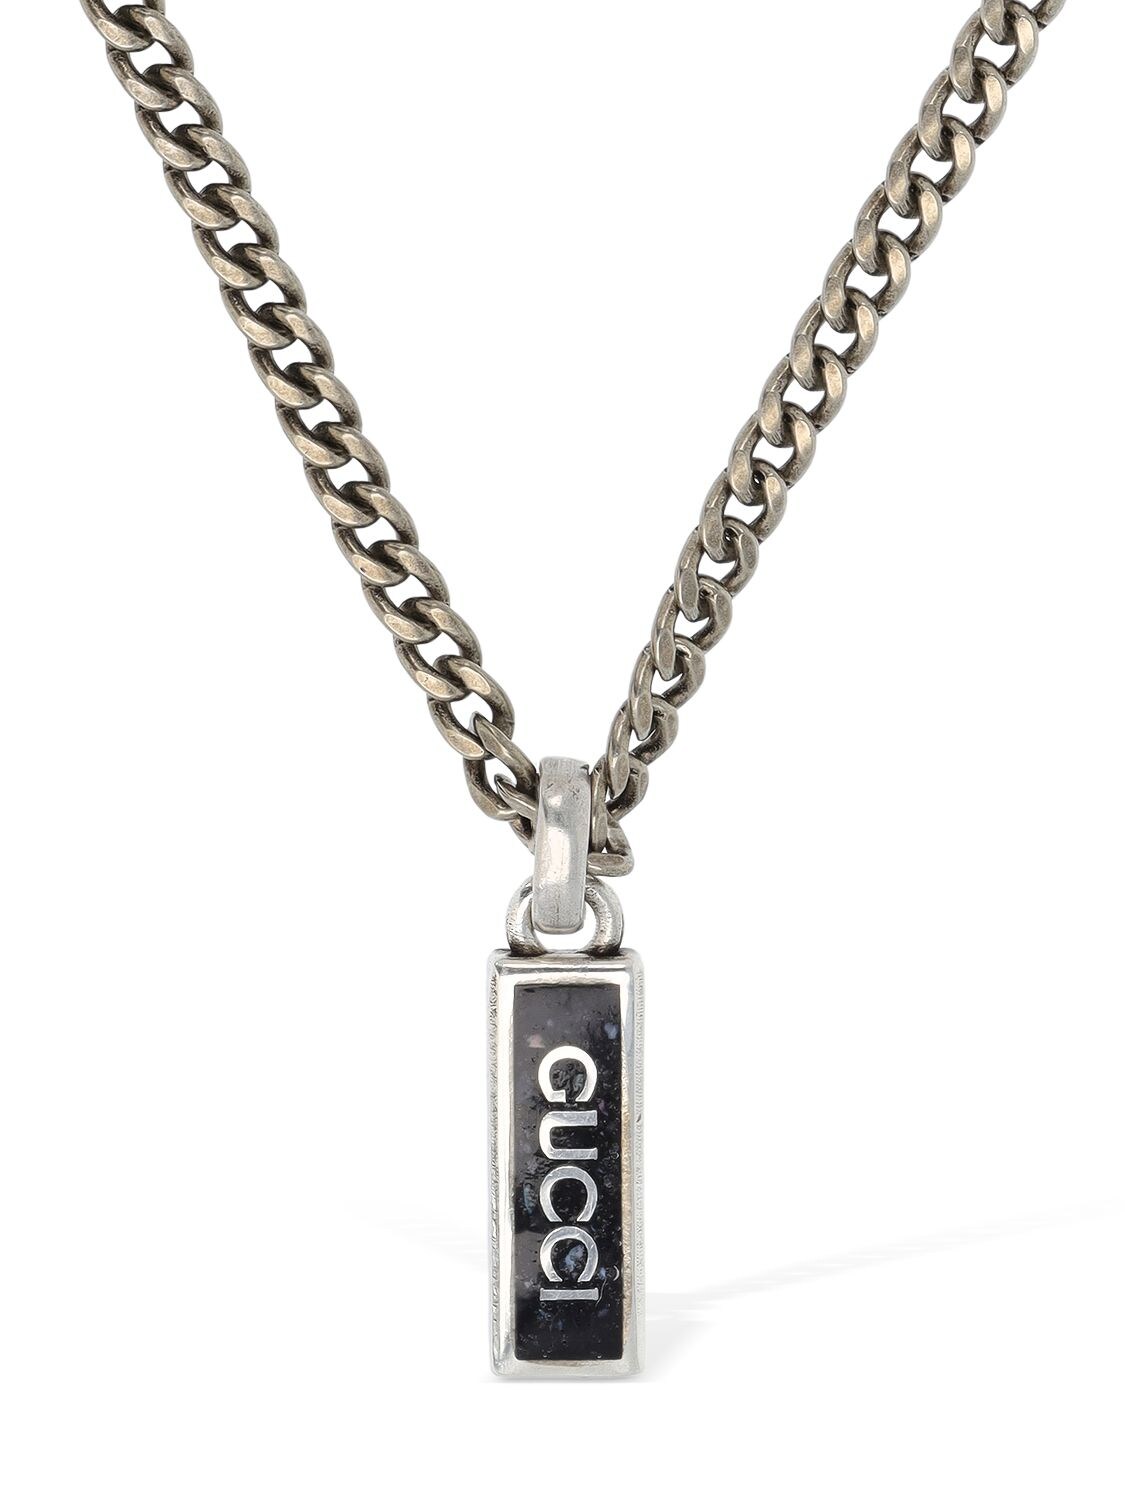 Gucci - Interlocking g chain necklace - Silver/Black | Luisaviaroma